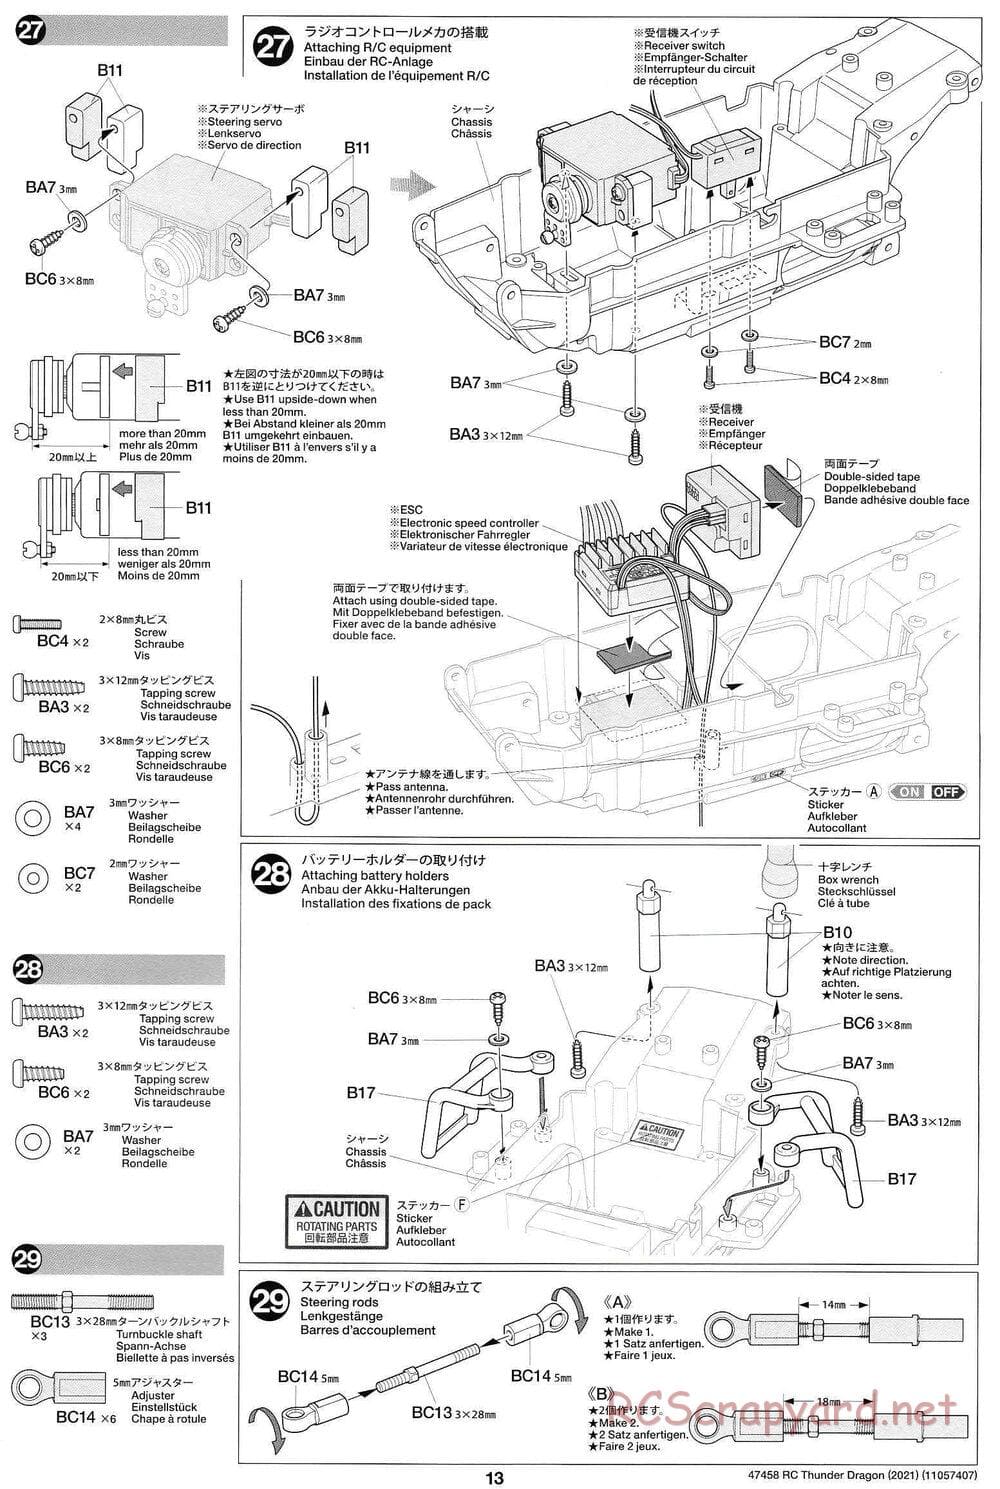 Tamiya - Thunder Dragon (2021) Chassis - Manual - Page 13